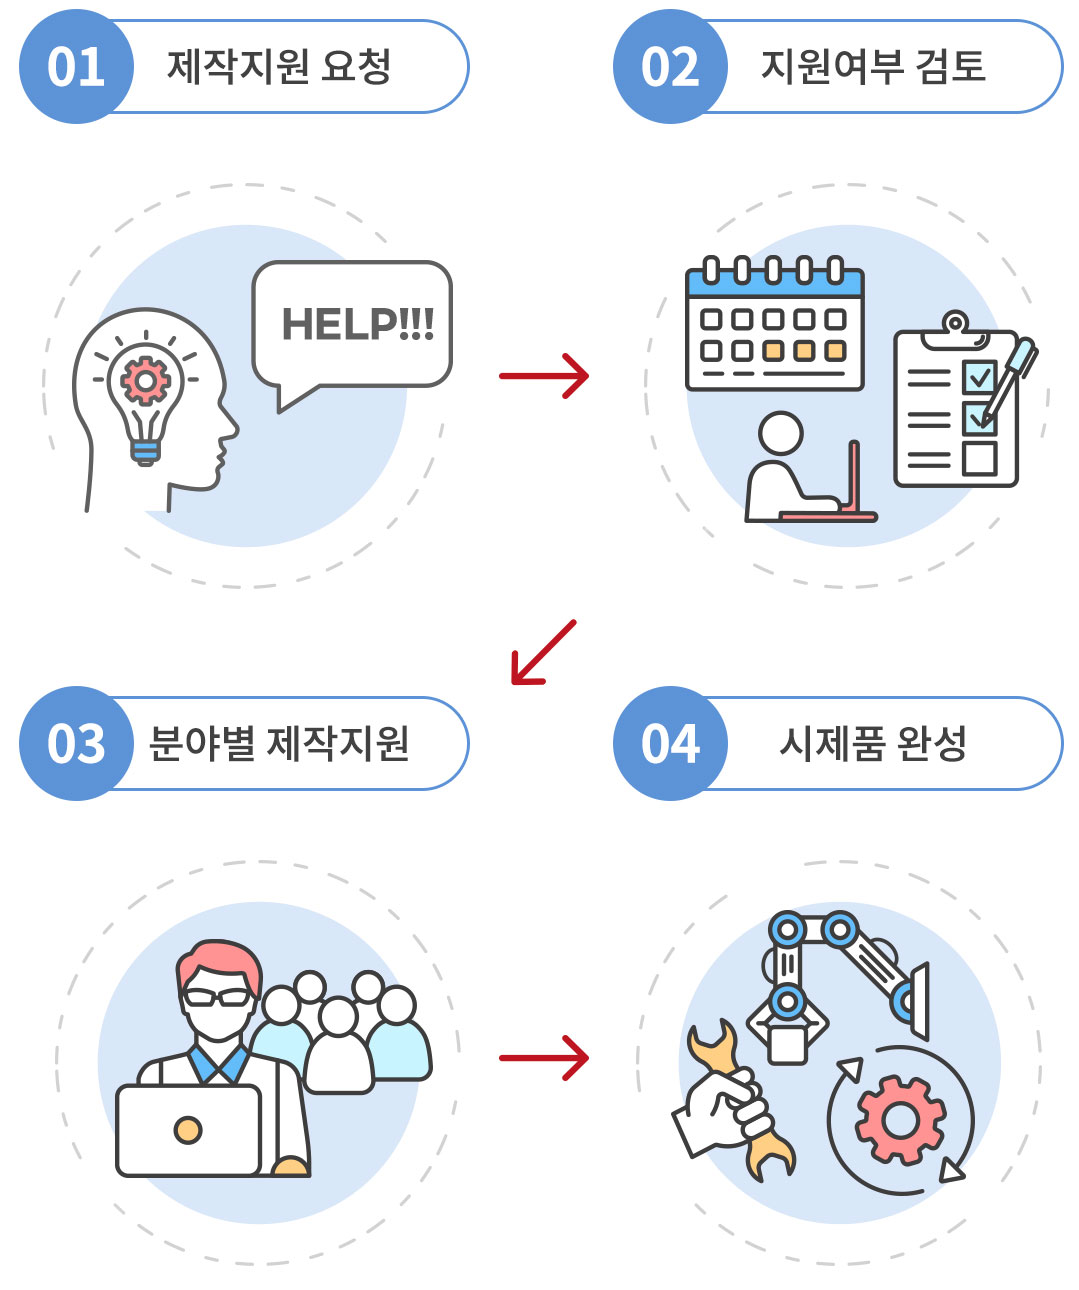 제작지원 요청 → 지원여부 검토 → 분야별 제작지 → 시제품 완성